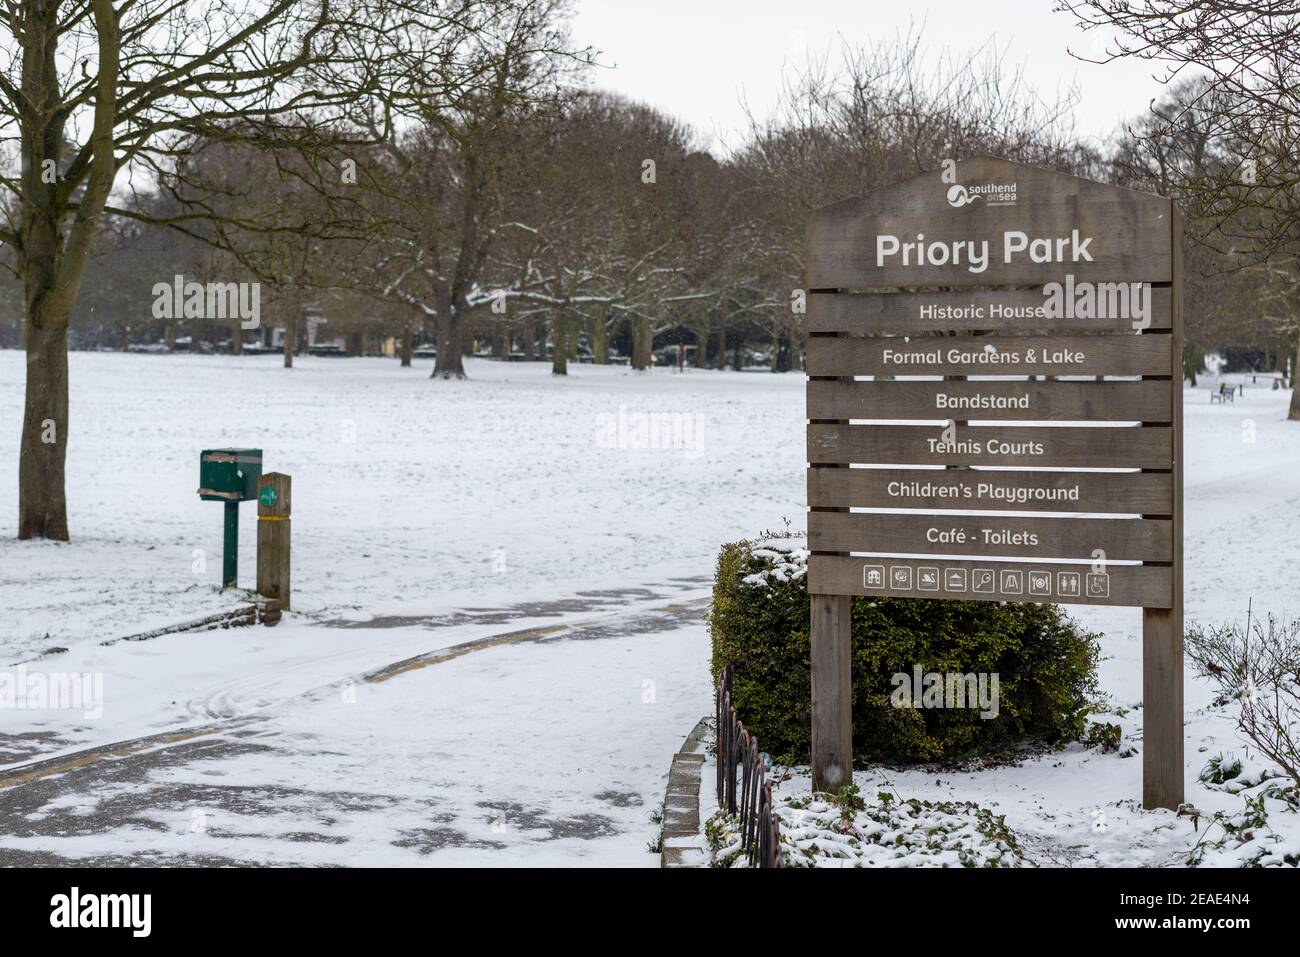 Priory Park à Southend on Sea, Essex, Royaume-Uni, avec de la neige provenant de Storm Darcy. Panneau d'entrée indiquant les attractions du parc. Arbres d'hiver Banque D'Images